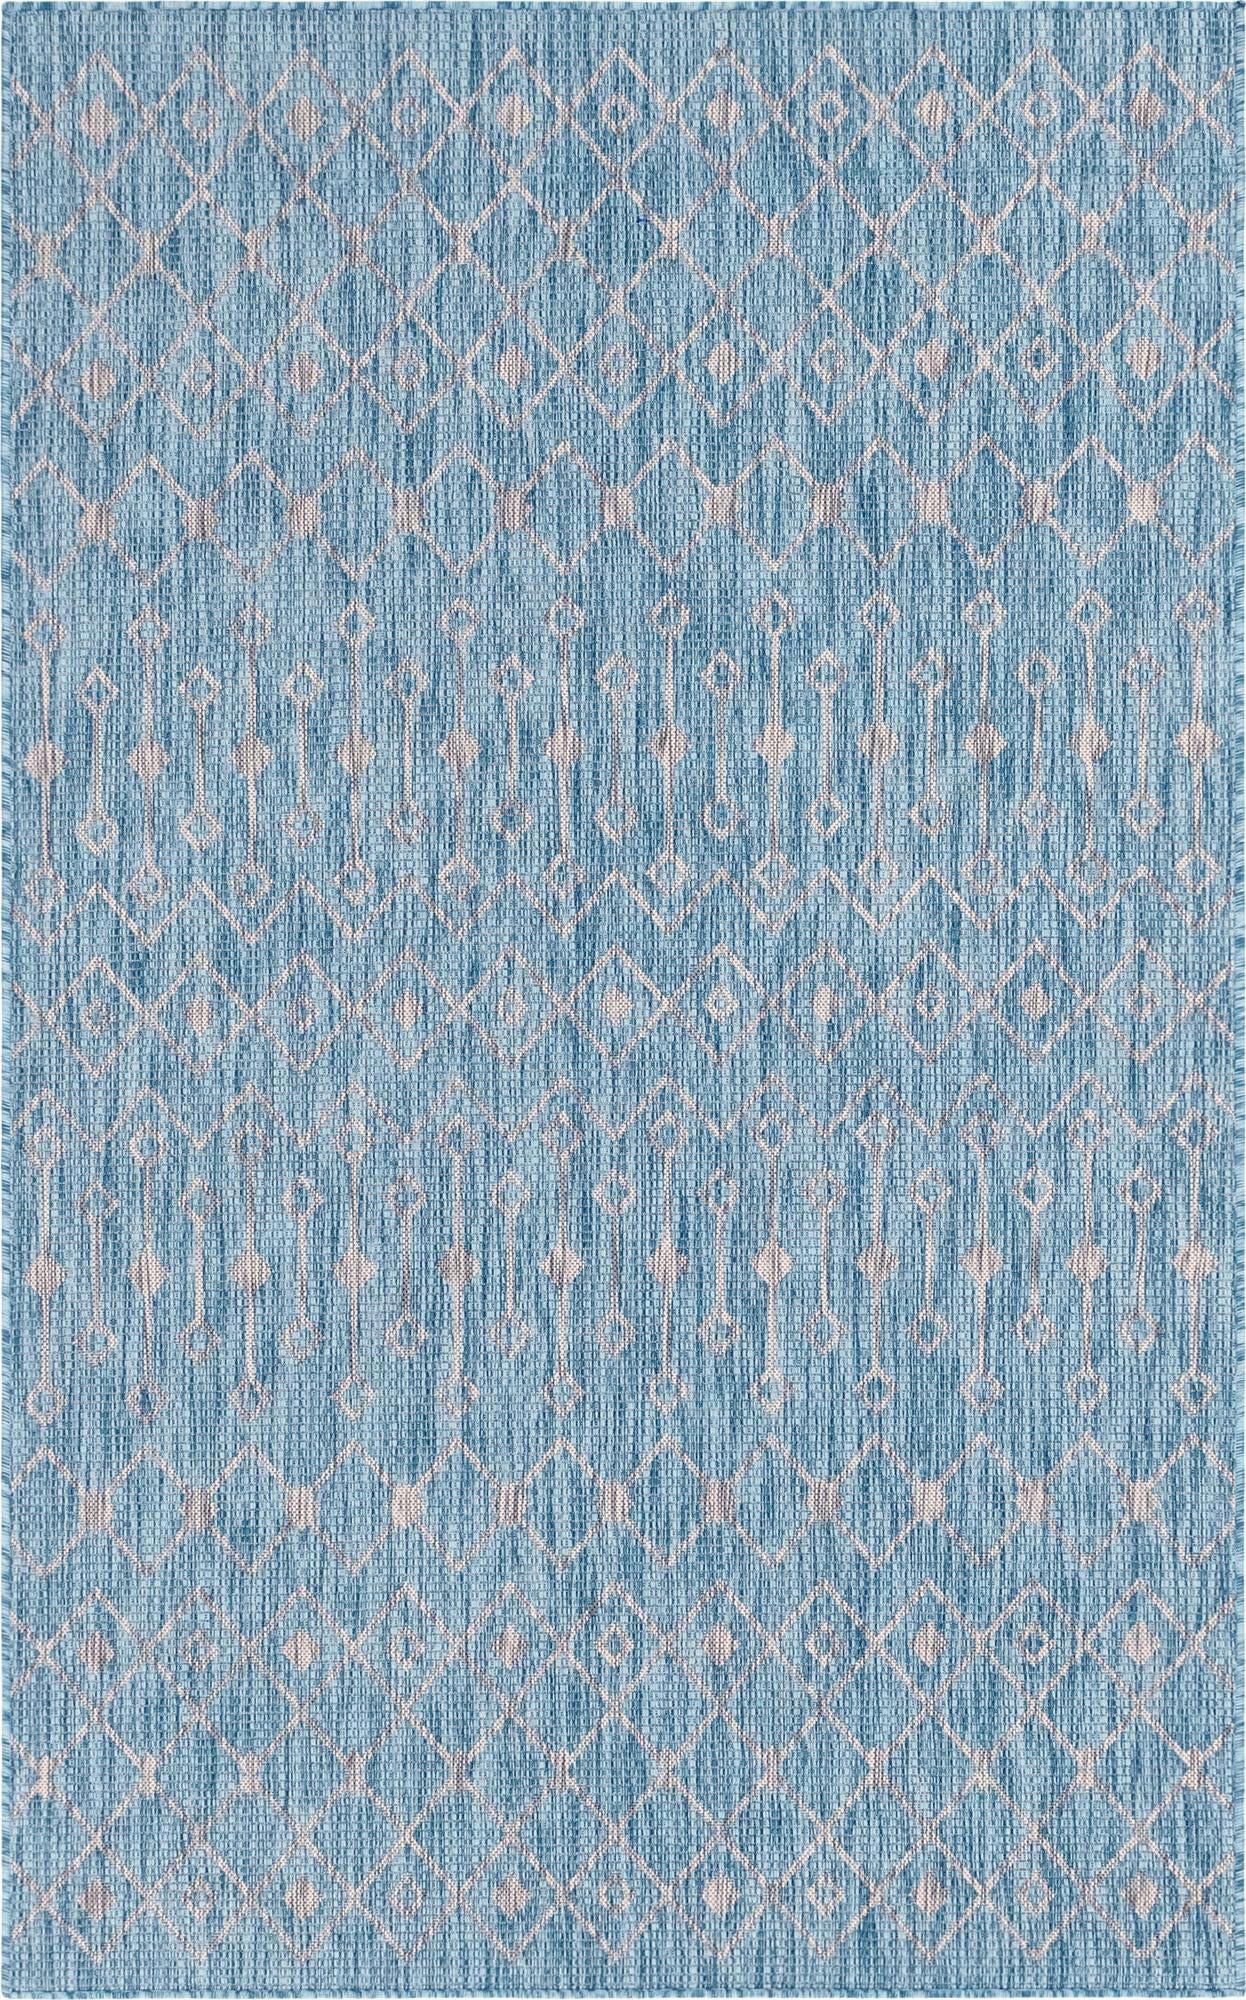 WEBTEPPICH  150/245 cm  Türkis   - Türkis, Basics, Textil (150/245cm)